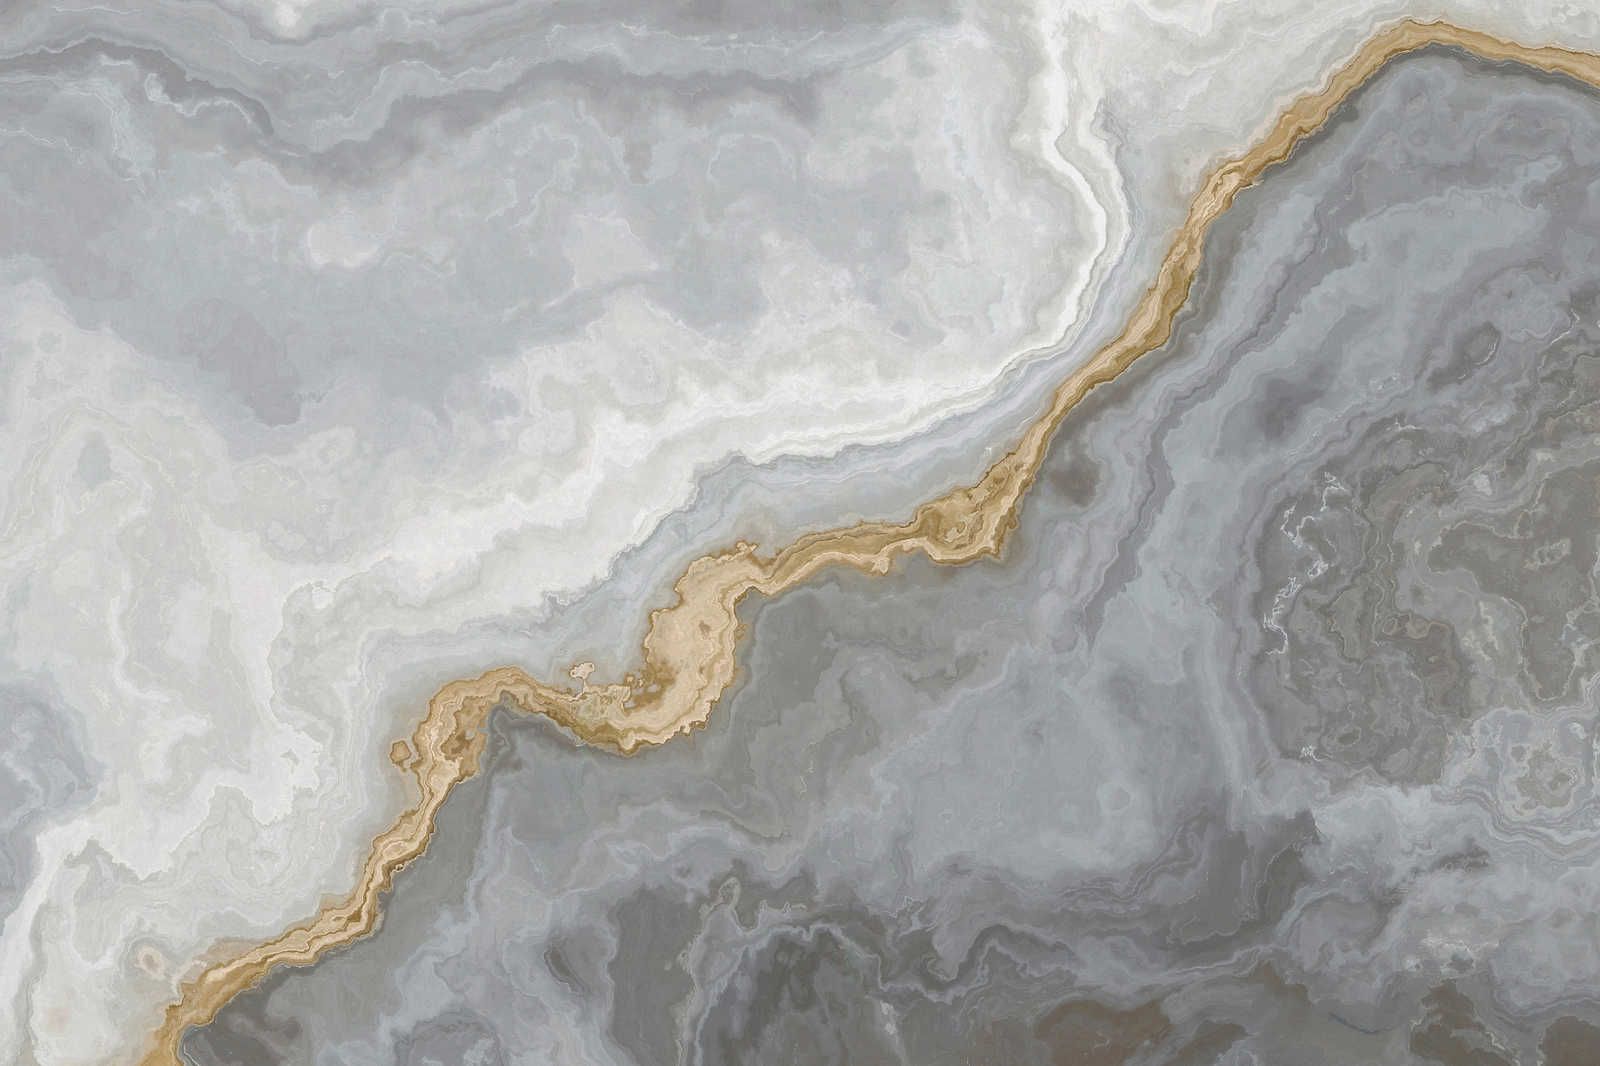             Leinwandbild Steinoptik Quarz mit Marmorierung – 0,90 m x 0,60 m
        